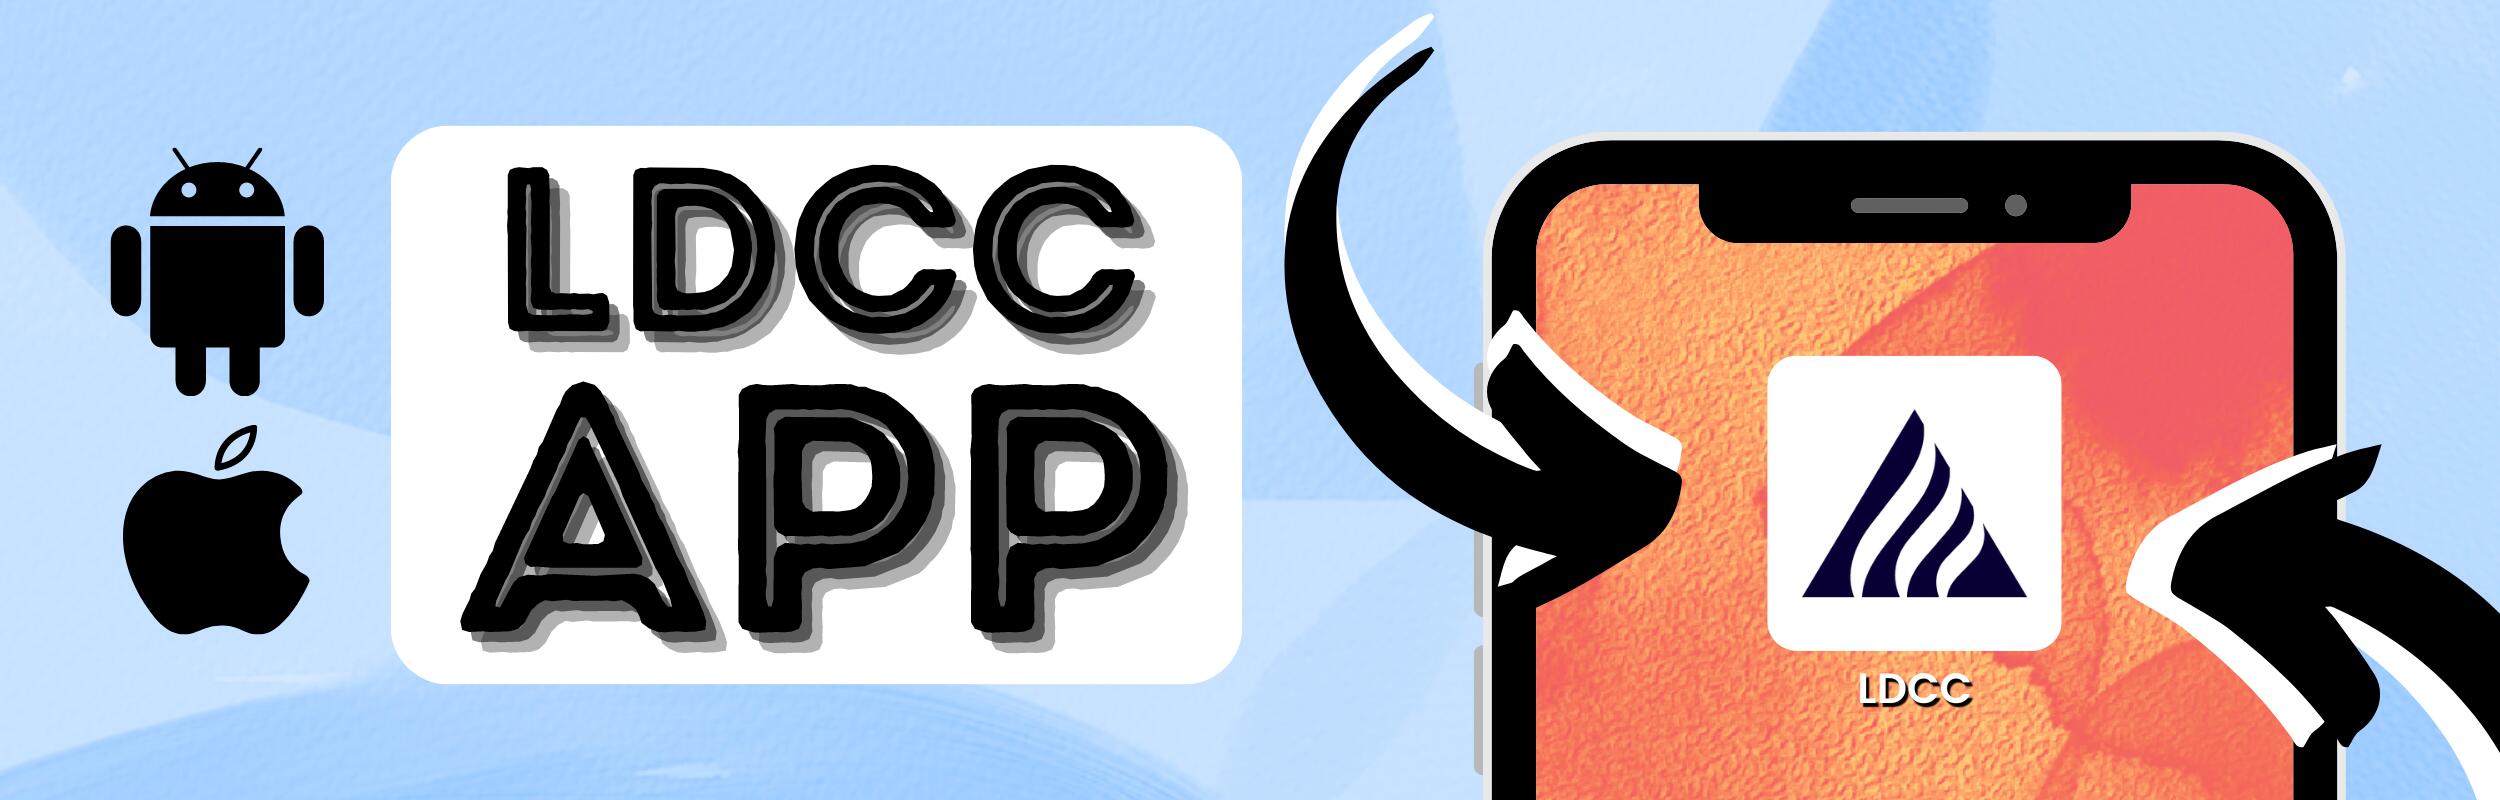 LDCC App: Download now!